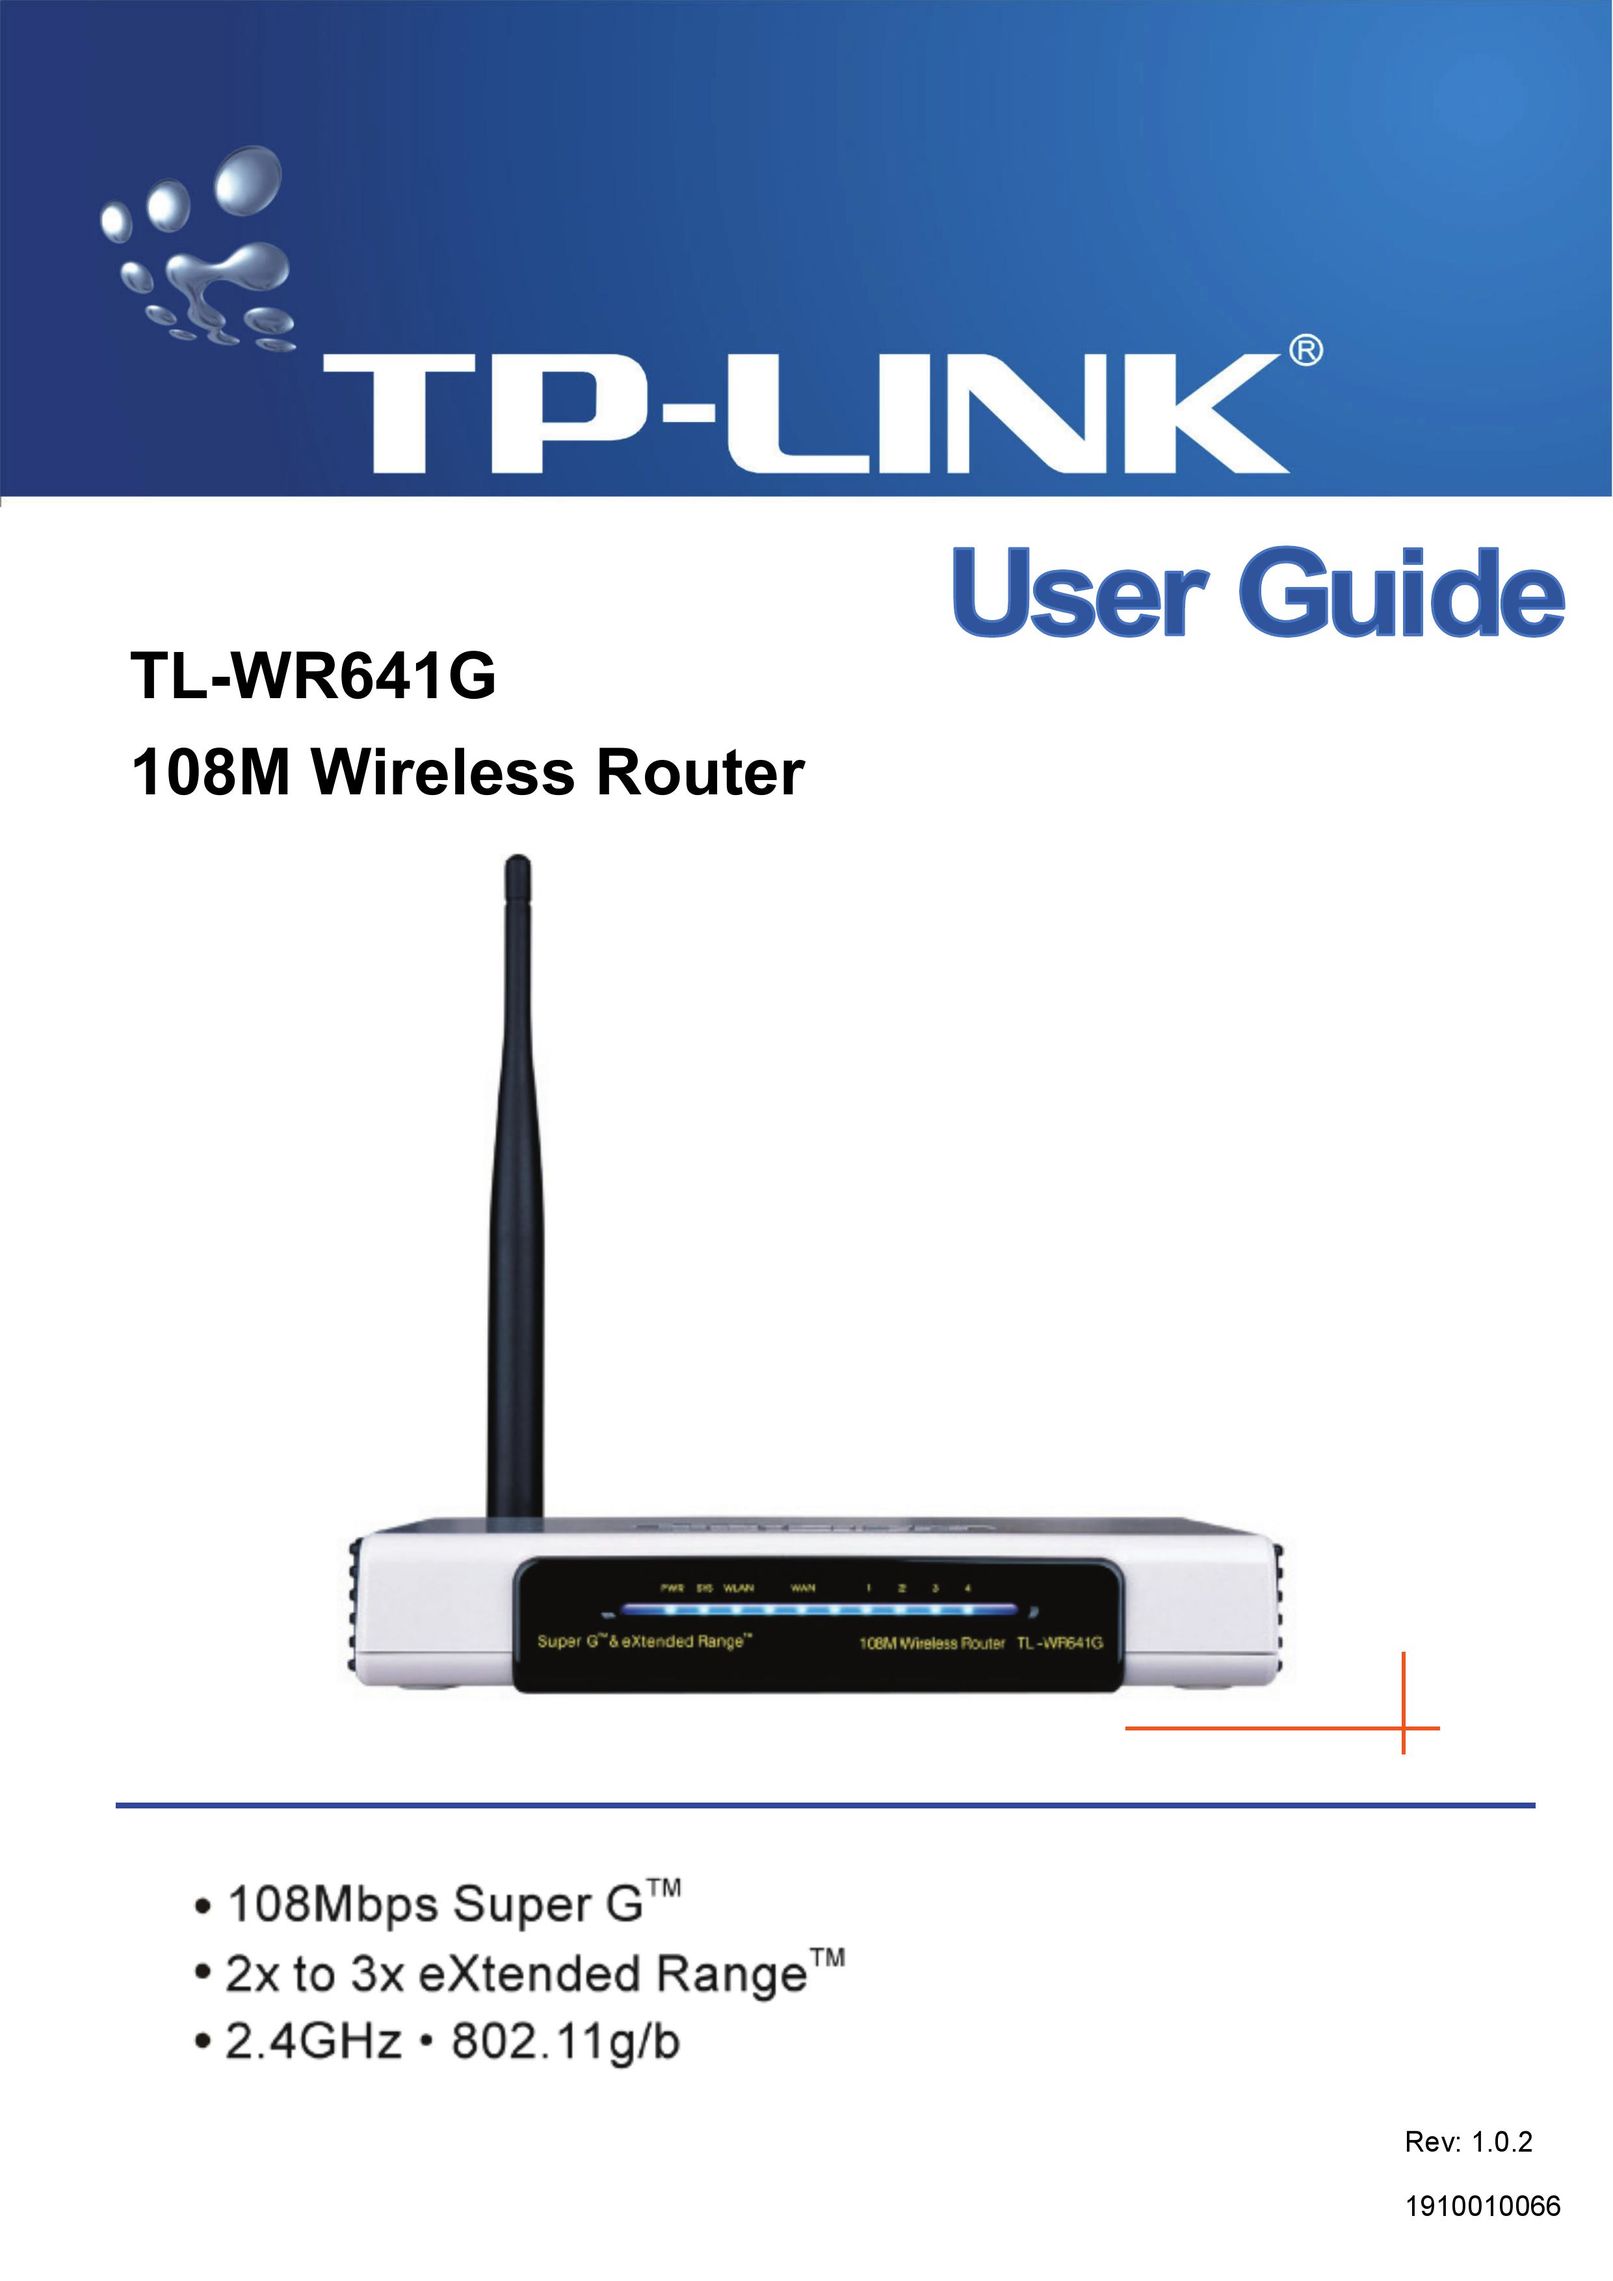 Vizio TL-WR641G Network Router User Manual